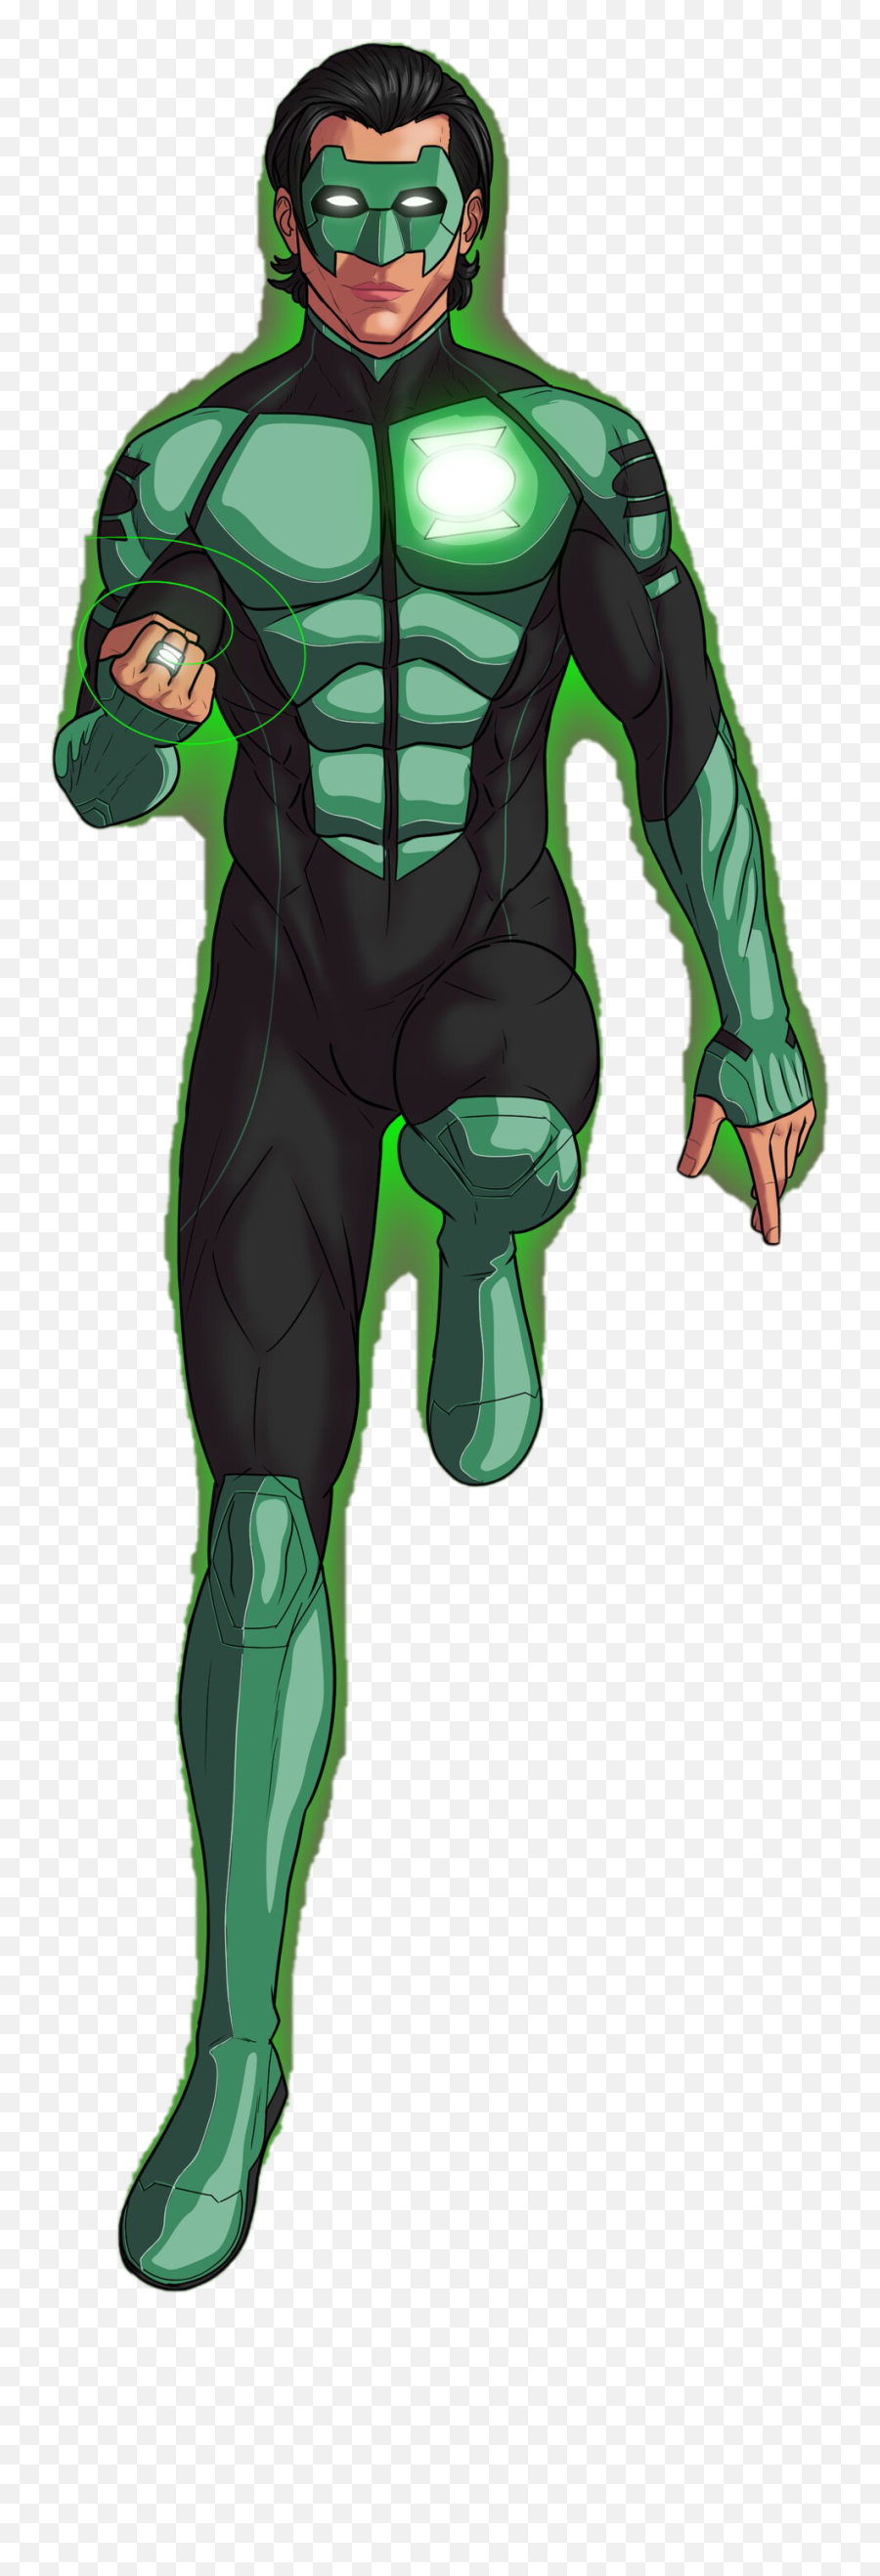 Kyle Rayner Png Background - Illustration,Green Lantern Png